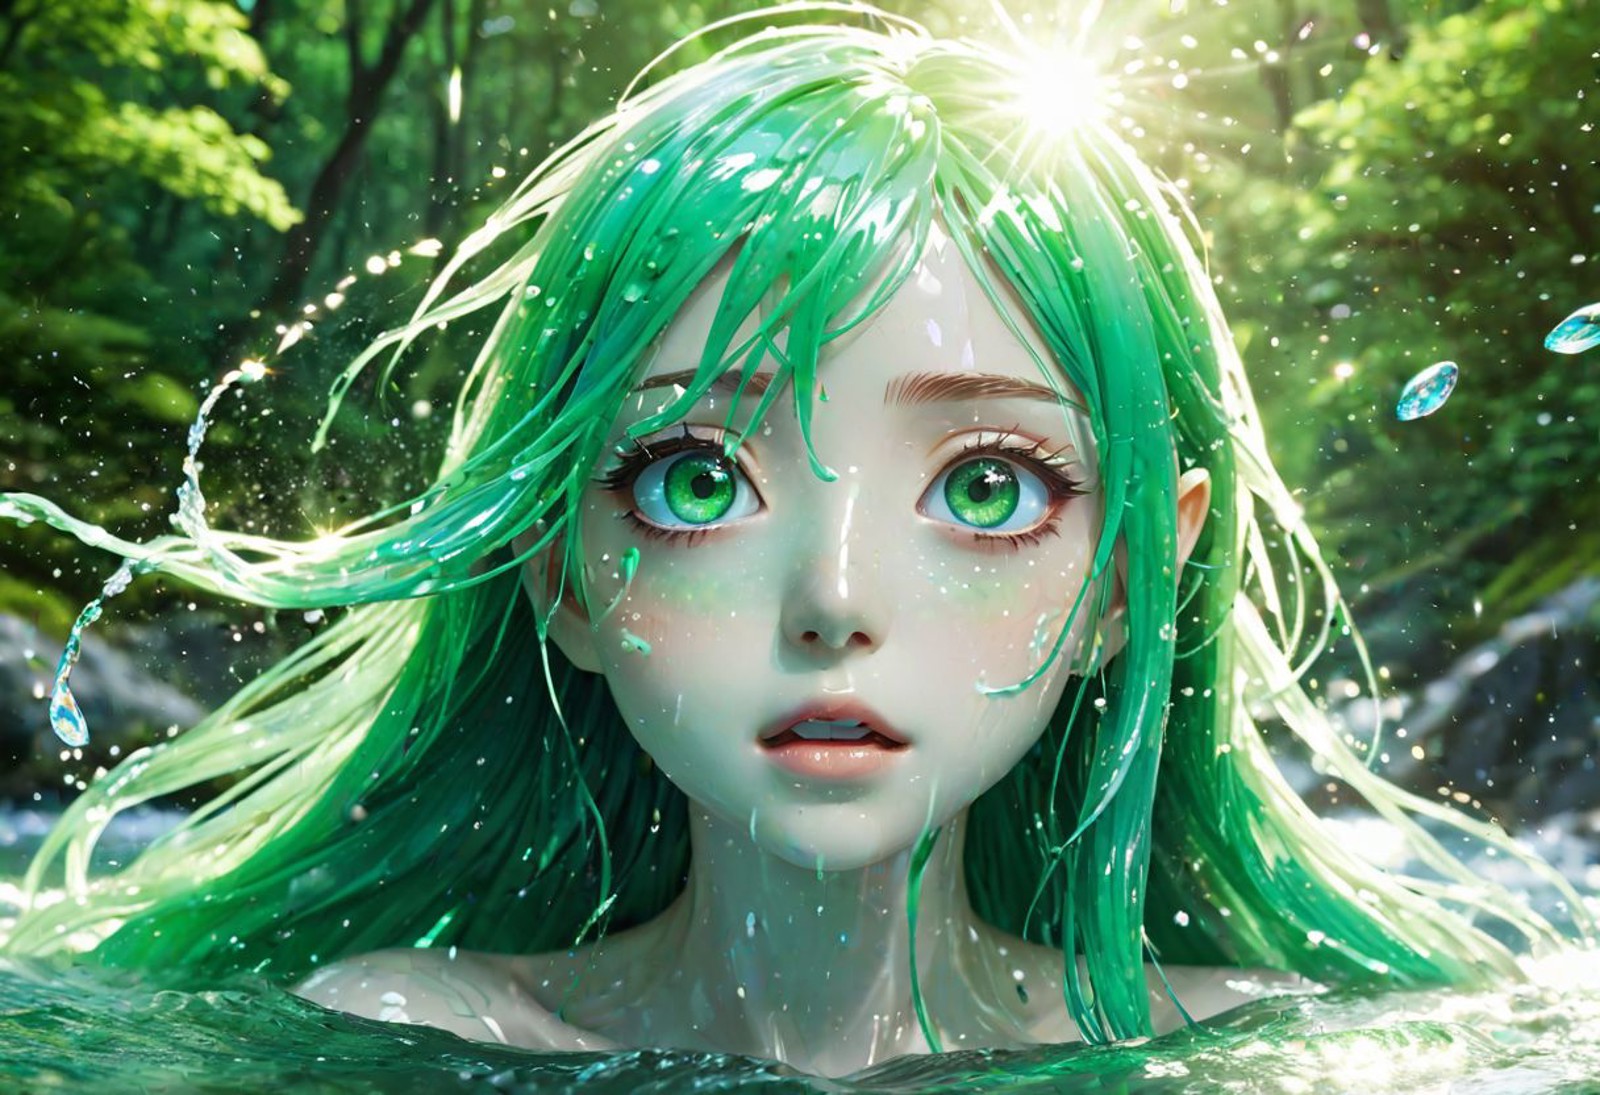 anime water spirit (anime style:1.5), long flowing green hair, iridescent skin (iridescence:1.3), playfully splashing (wat...